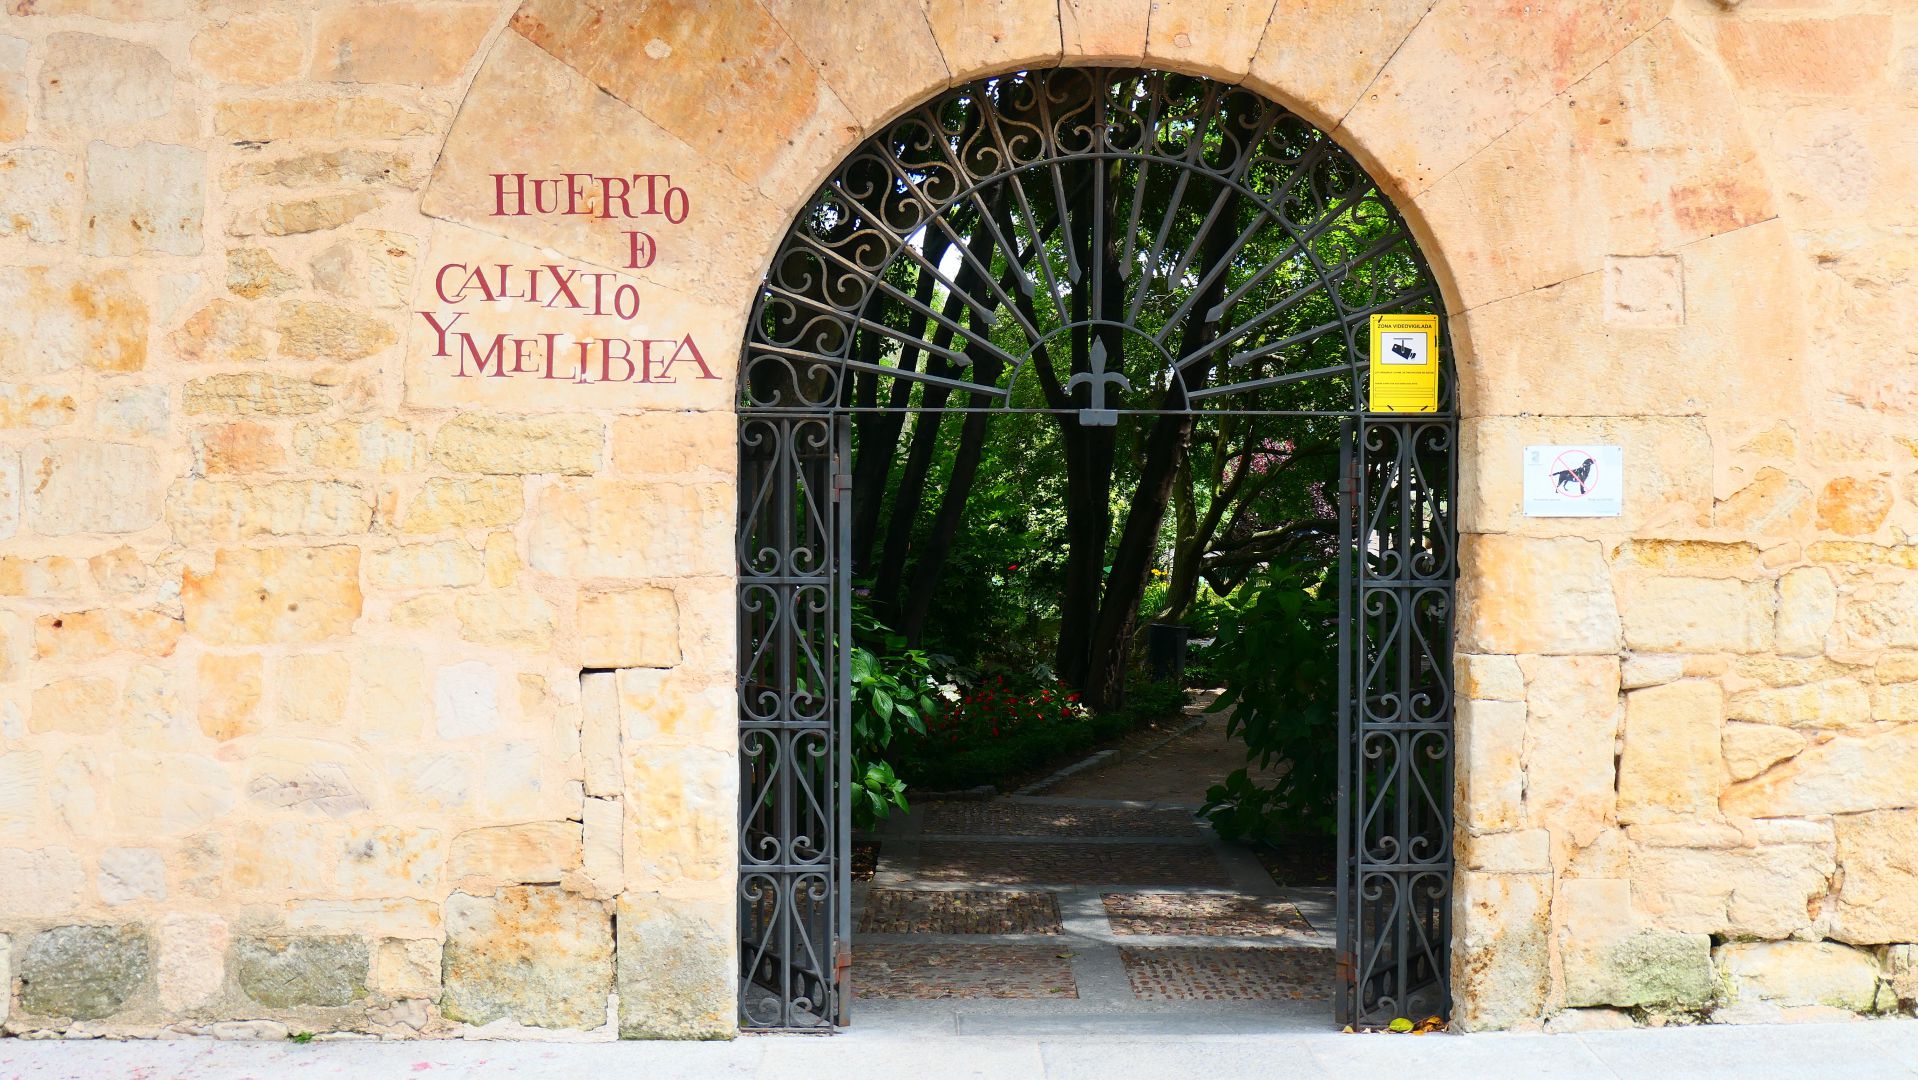 SALAMANCA - der Huerto de Calisto y Melibea ist ein Garten von 2.500 Quadratmetern in der Altstadt